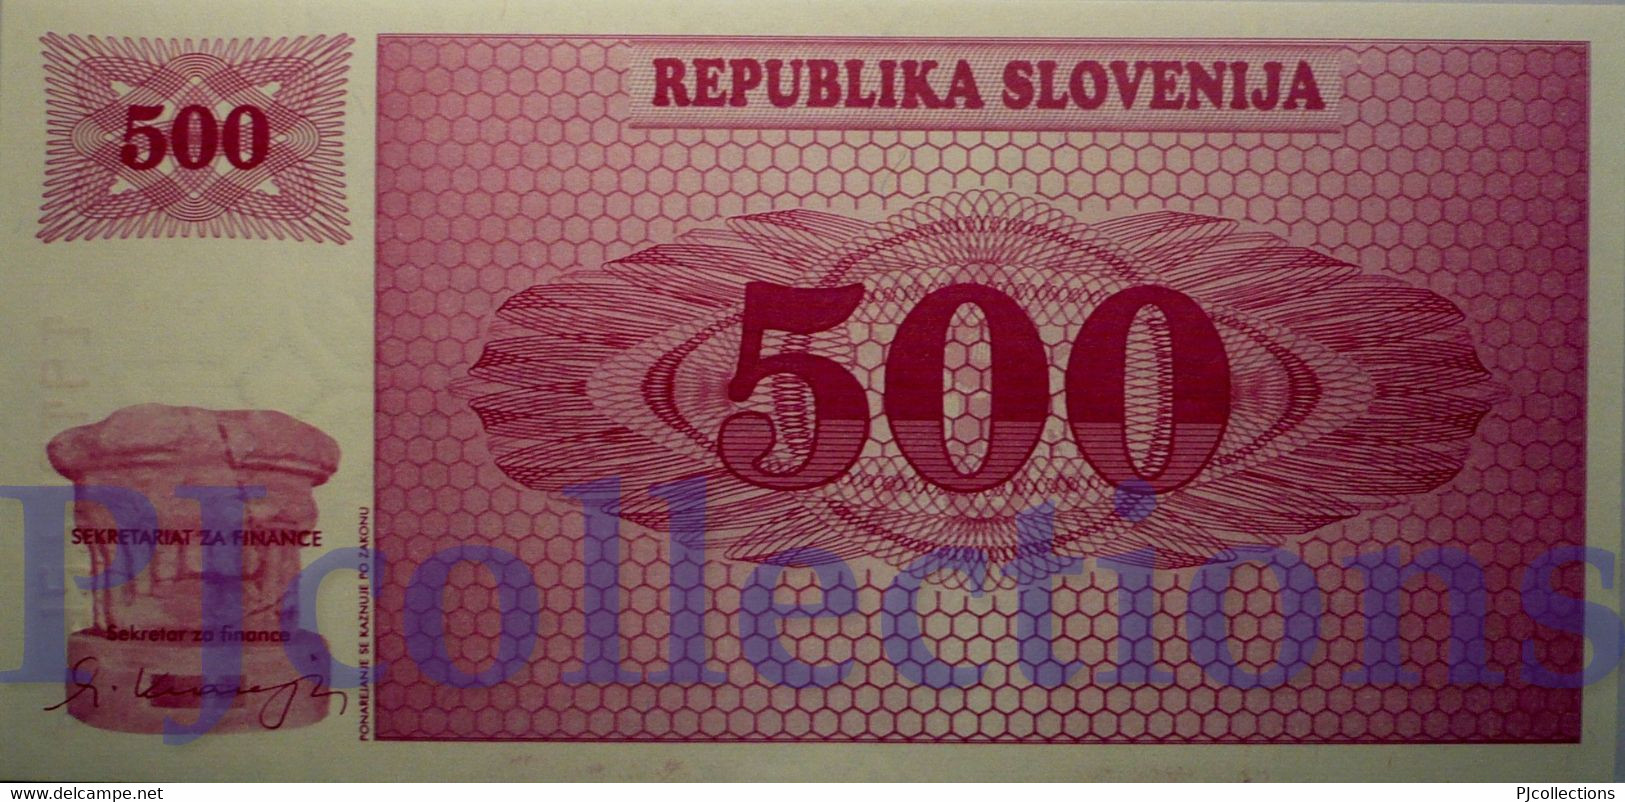 SLOVENIA 500 TOLARJEV 1990 PICK 8s1 SPECIMEN UNC - Slovénie